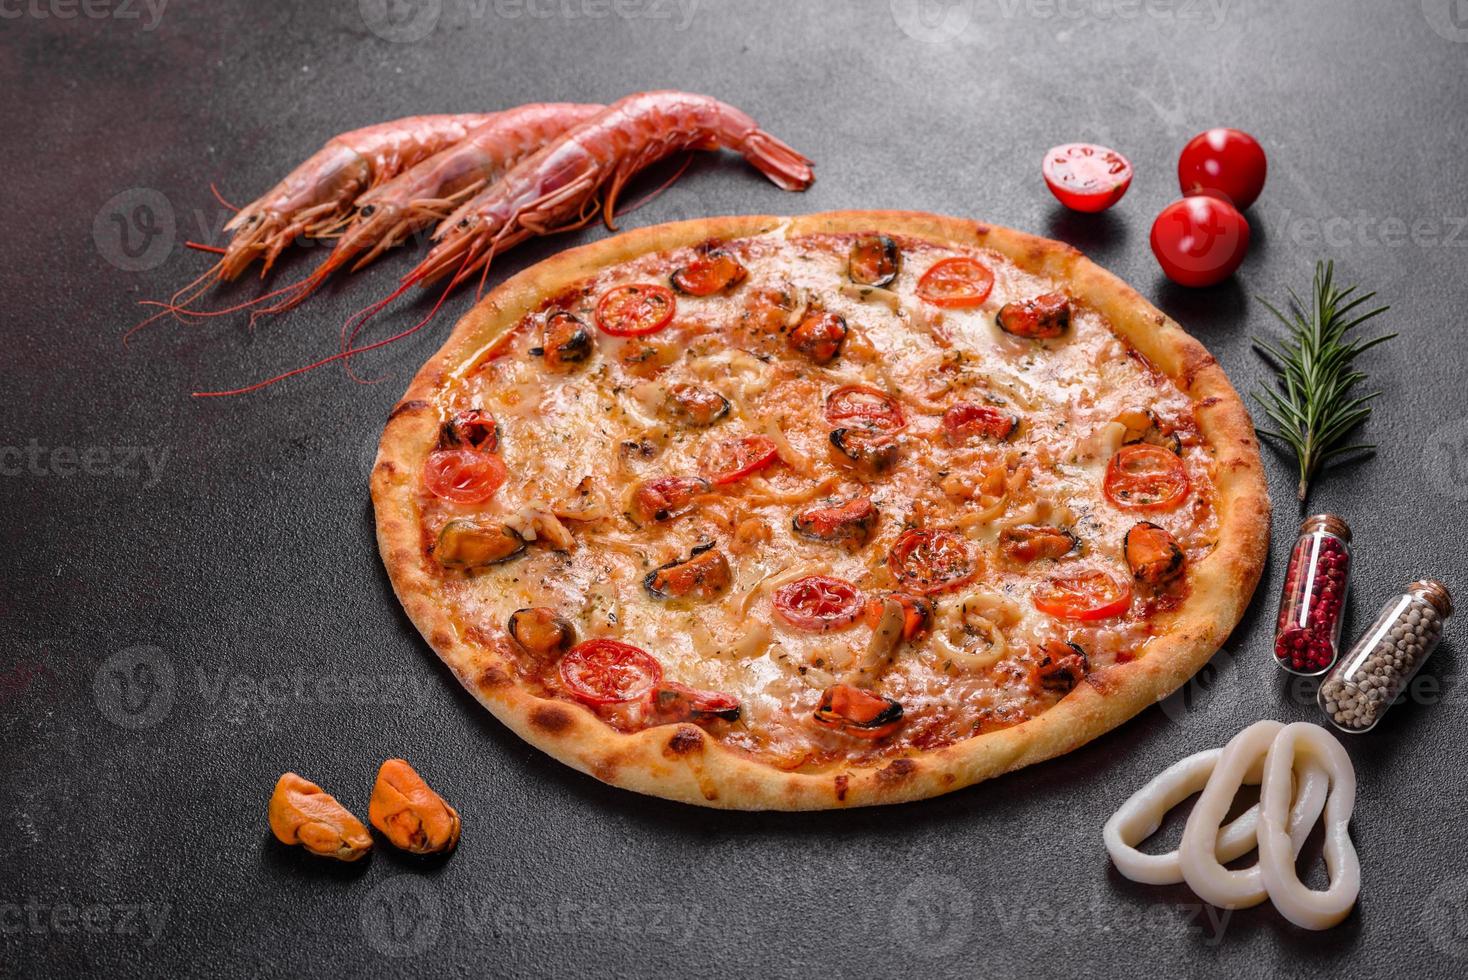 savoureuse pizza en tranches avec fruits de mer et tomate sur fond de béton photo